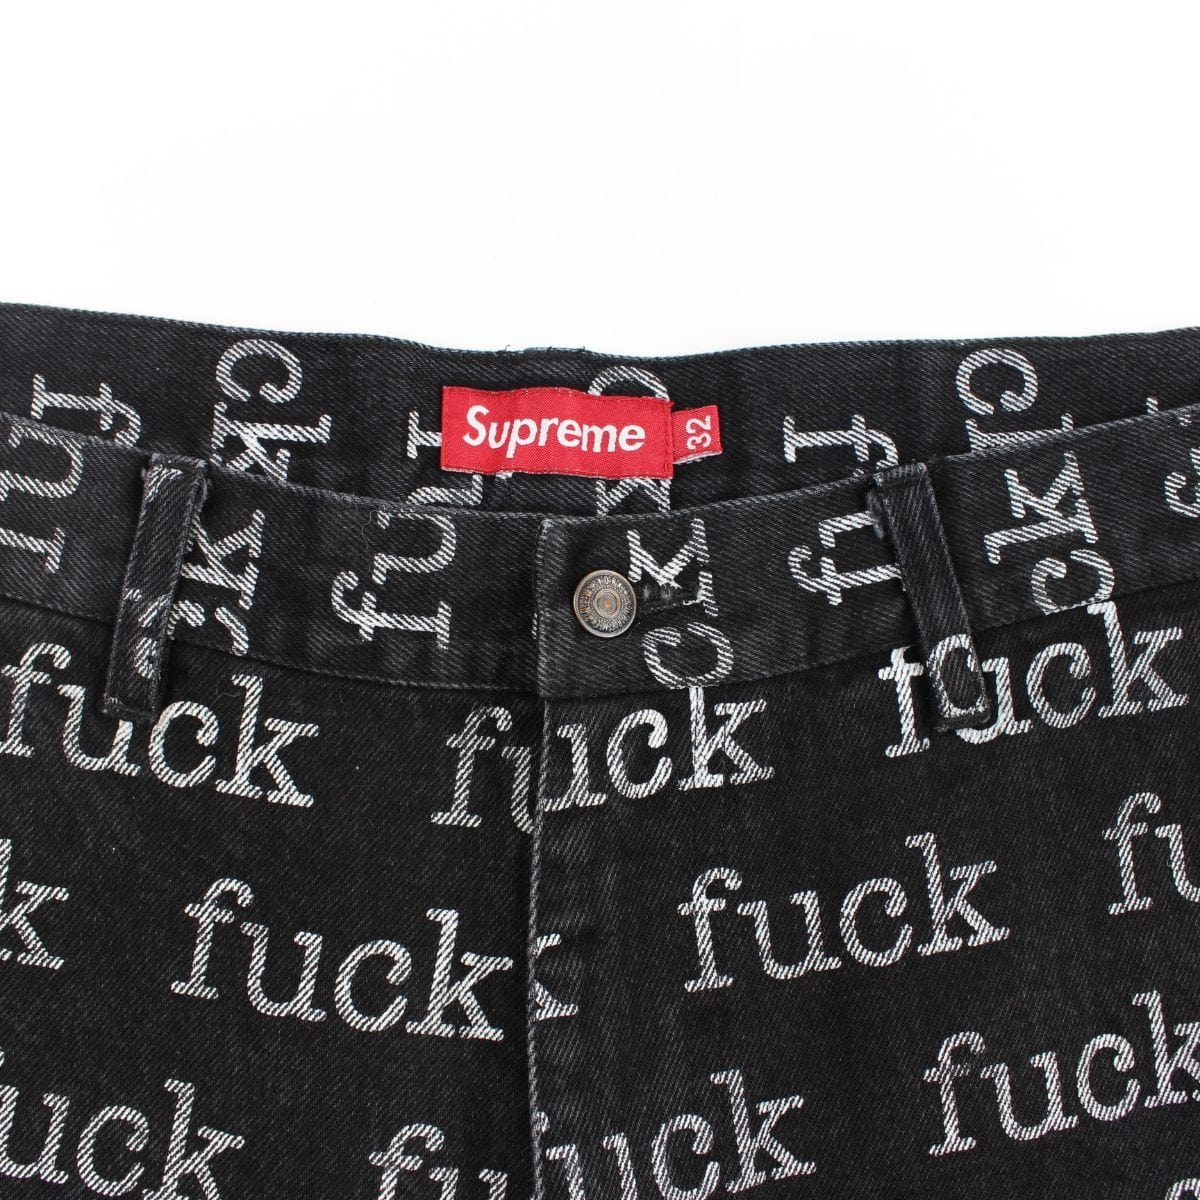 supreme fuck denim shorts 2013 - SaruGeneral